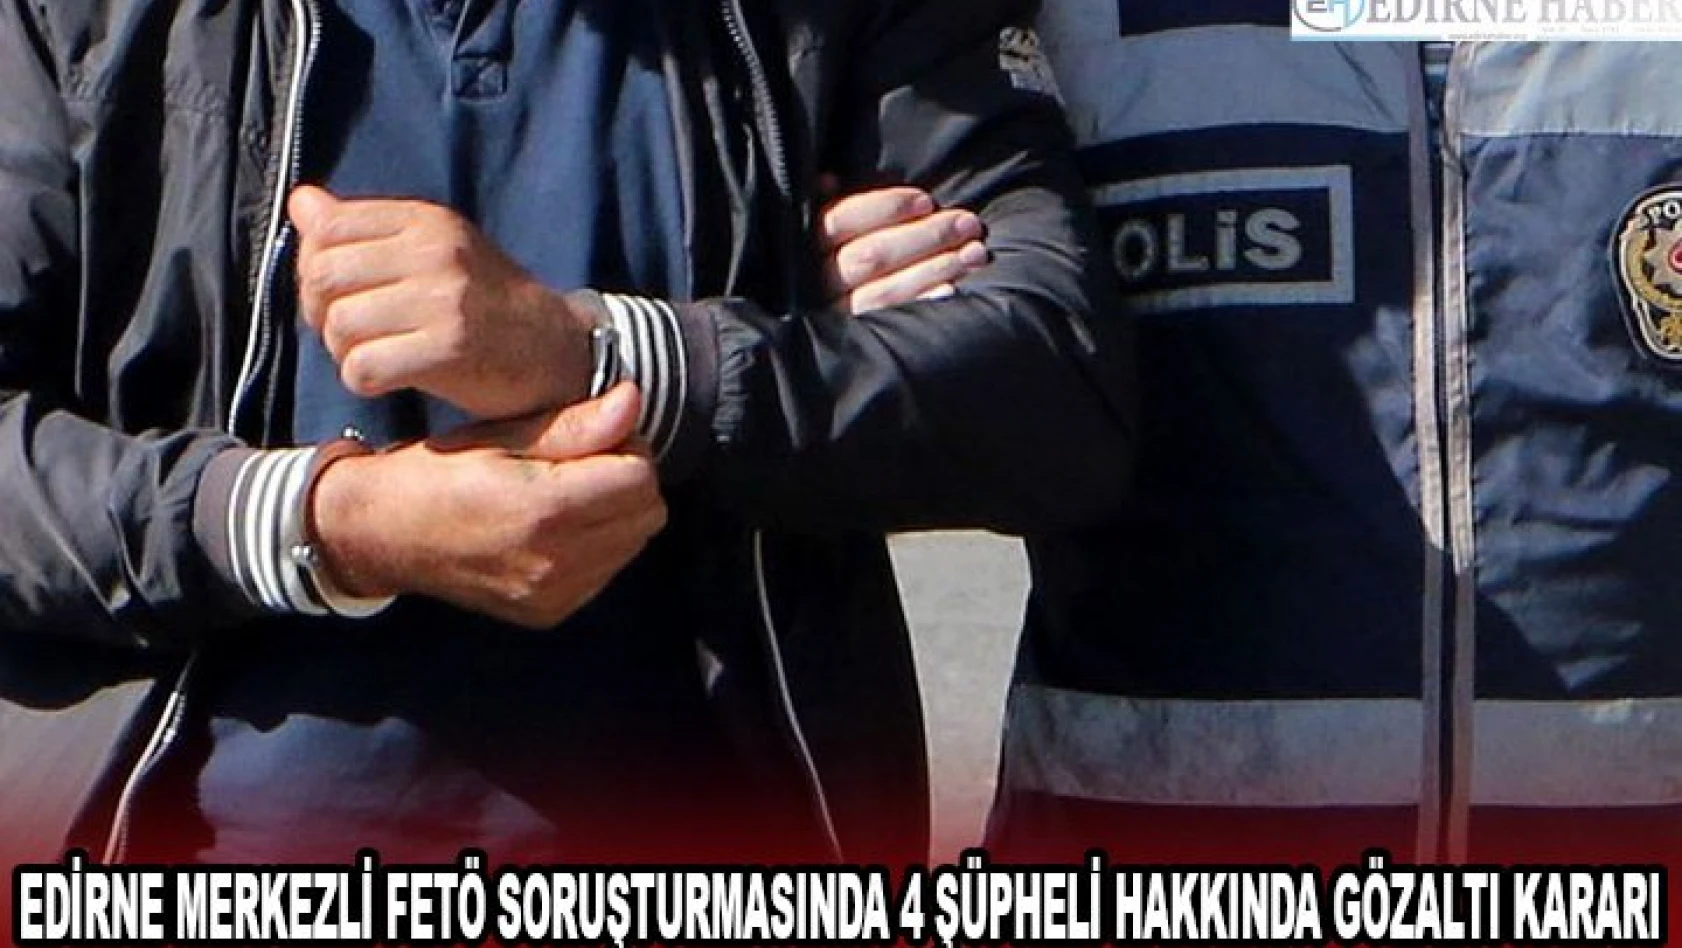 Edirne merkezli FETÖ soruşturmasında 4 şüpheli hakkında gözaltı kararı